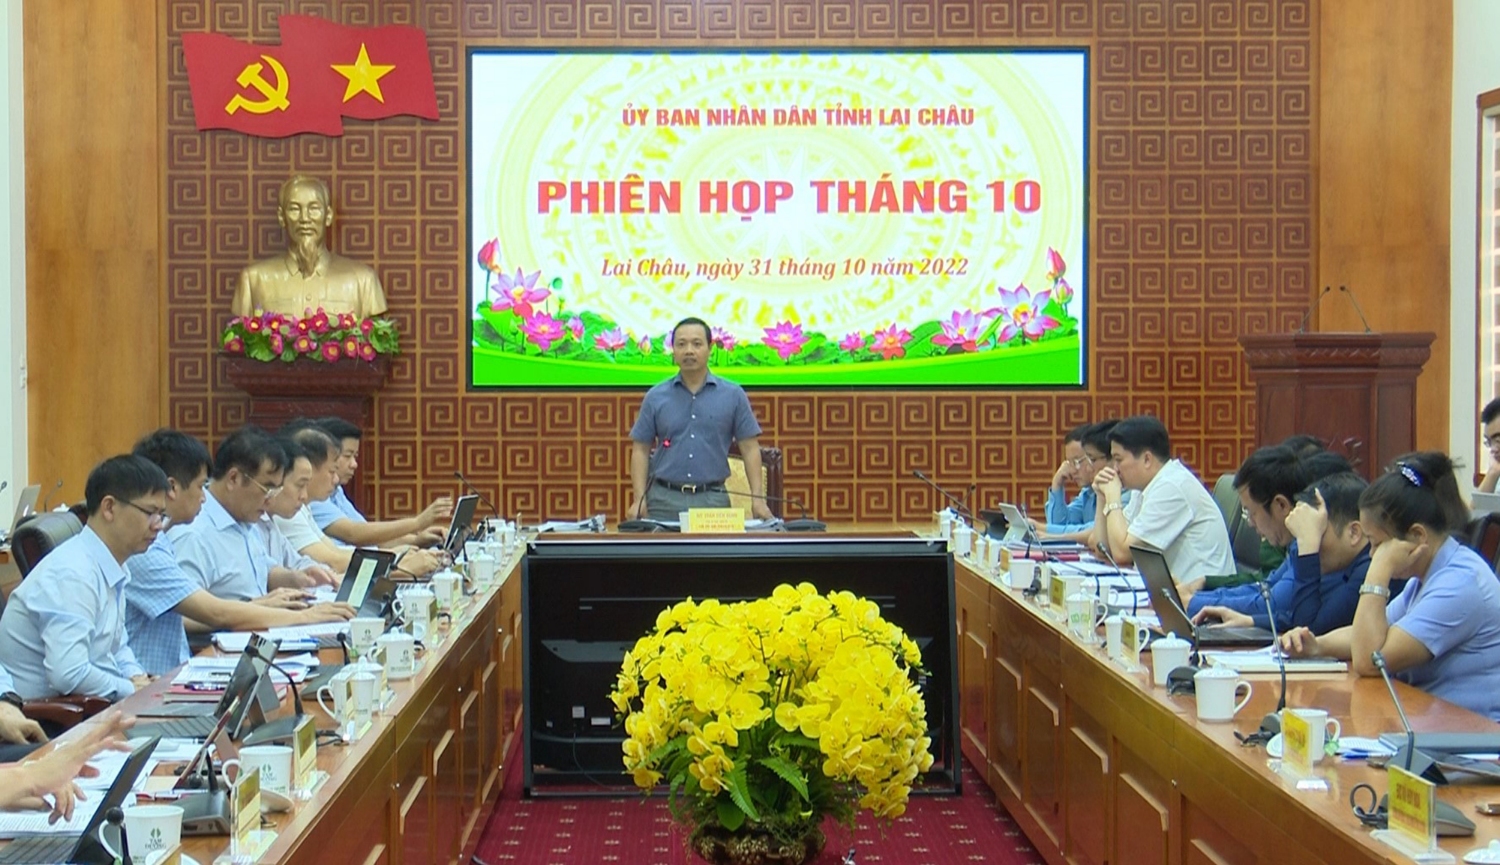 Đồng chí Trần Tiến Dũng - Phó Bí thư Tỉnh ủy, Chủ tịch UBND tỉnh phát biểu kết luận phiên họp